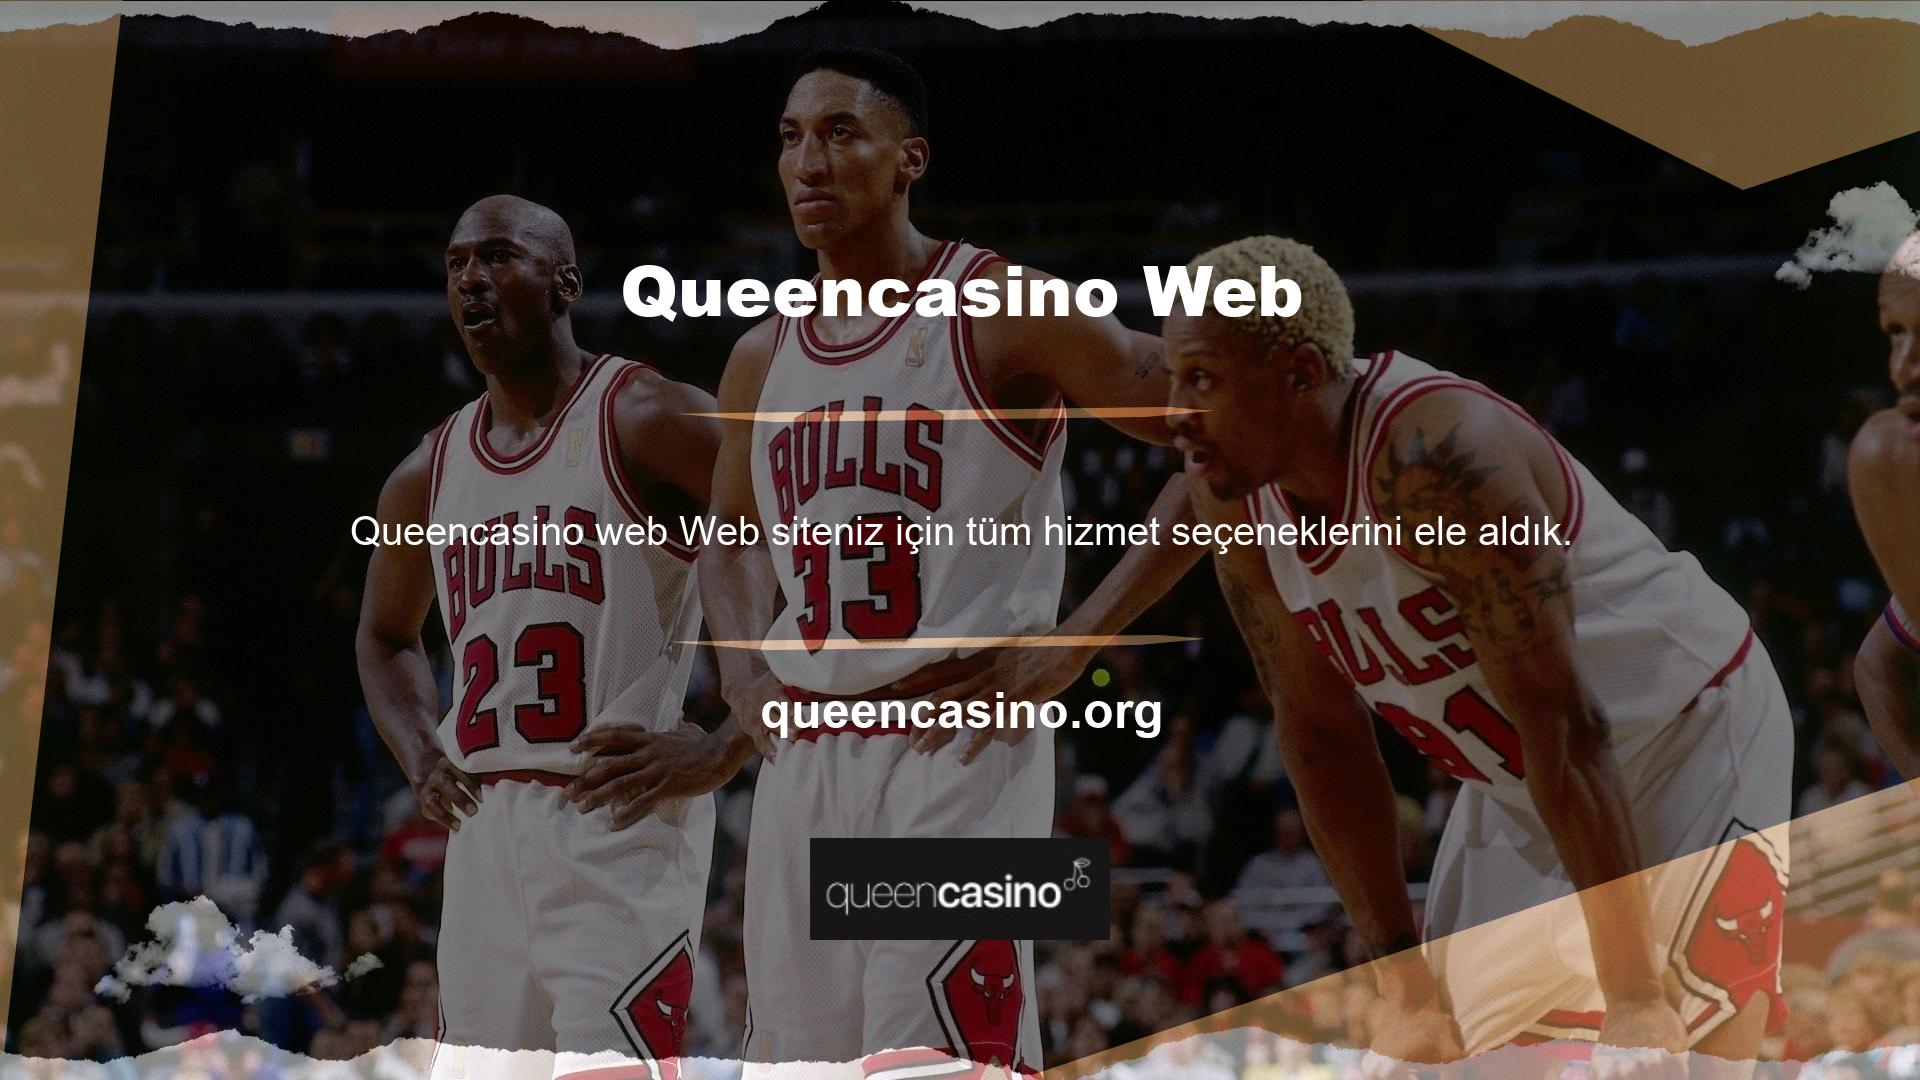 Queencasino Web